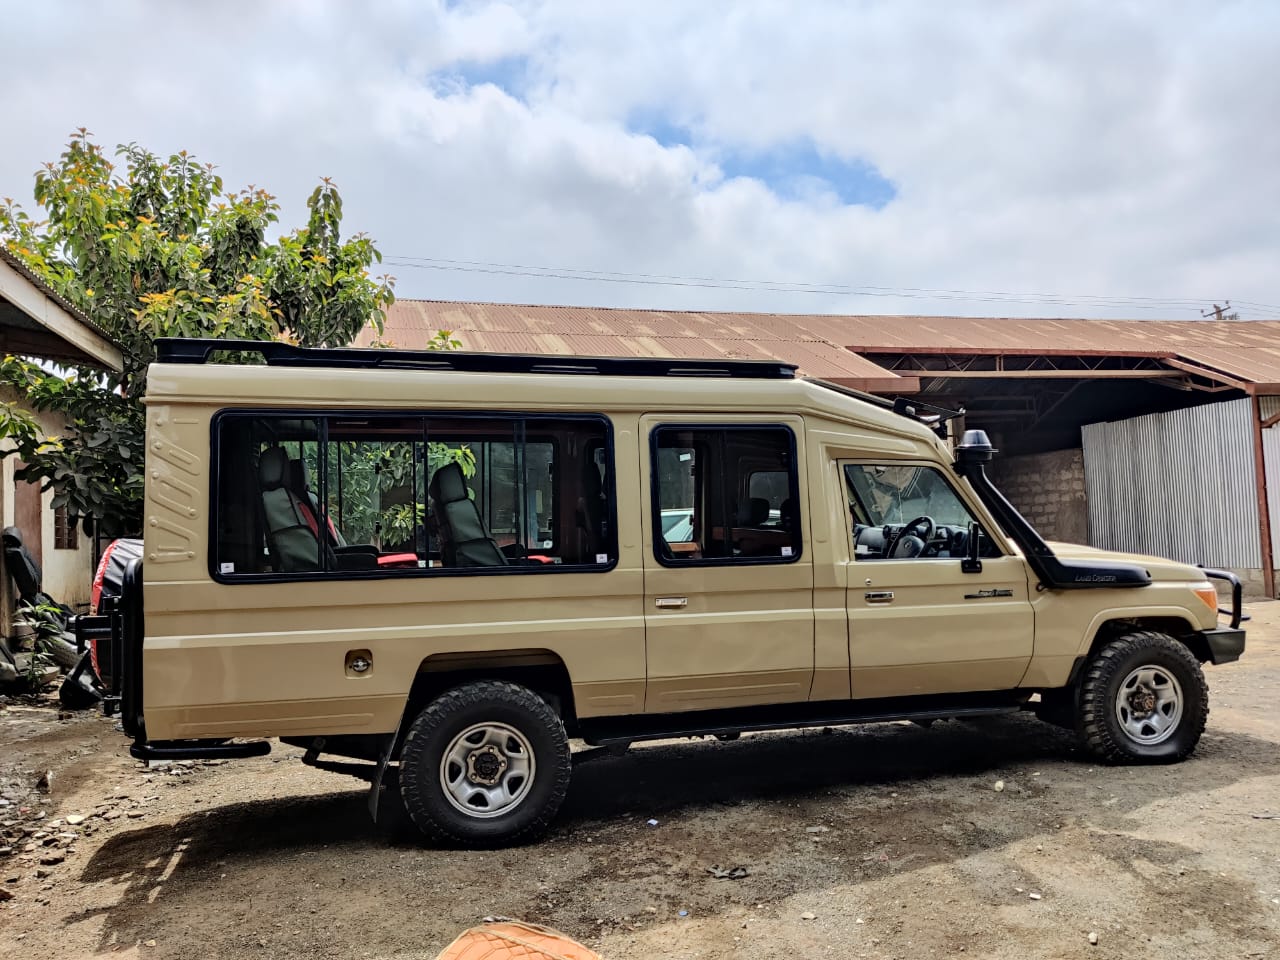 Renting a car in uganda for safari